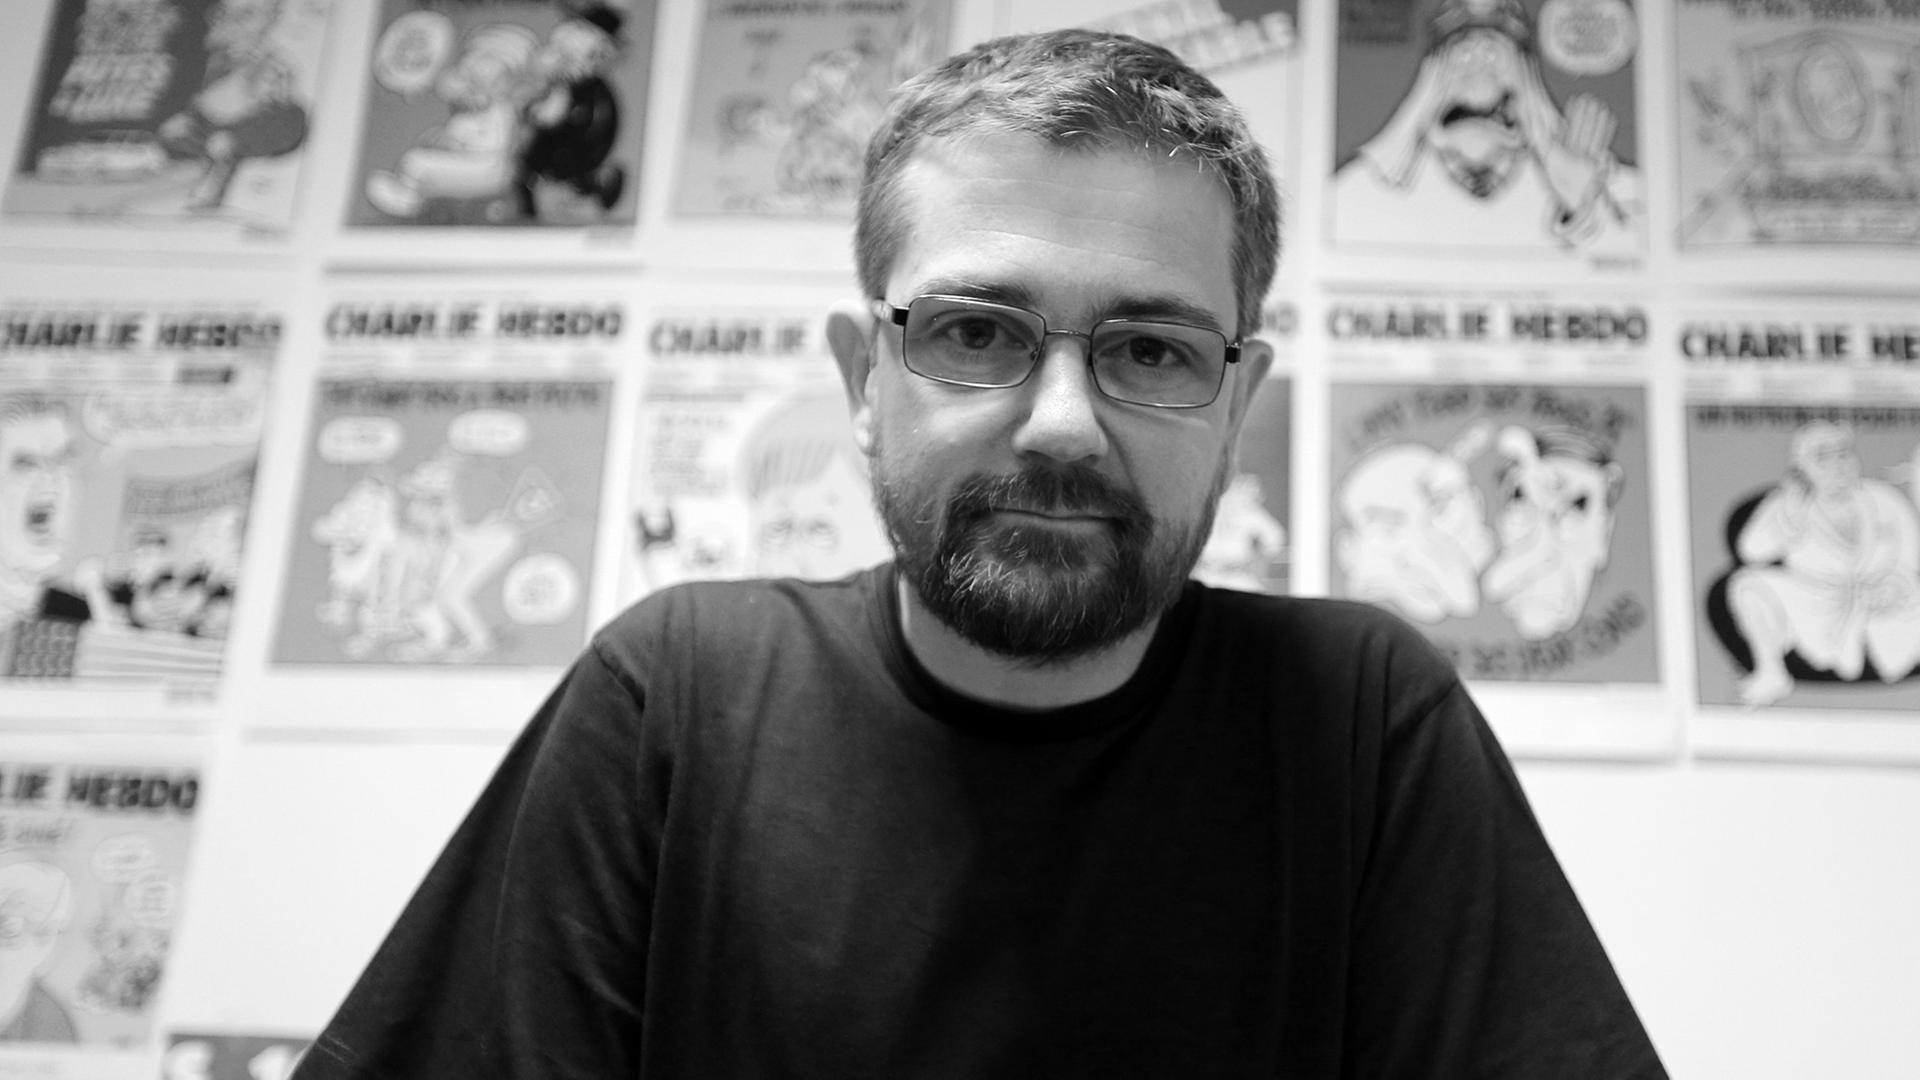 Der Karikaturist und Journalist Stéphane Charbonnier, genannt "Charb", vor einer Auswahl von Karikaturen.